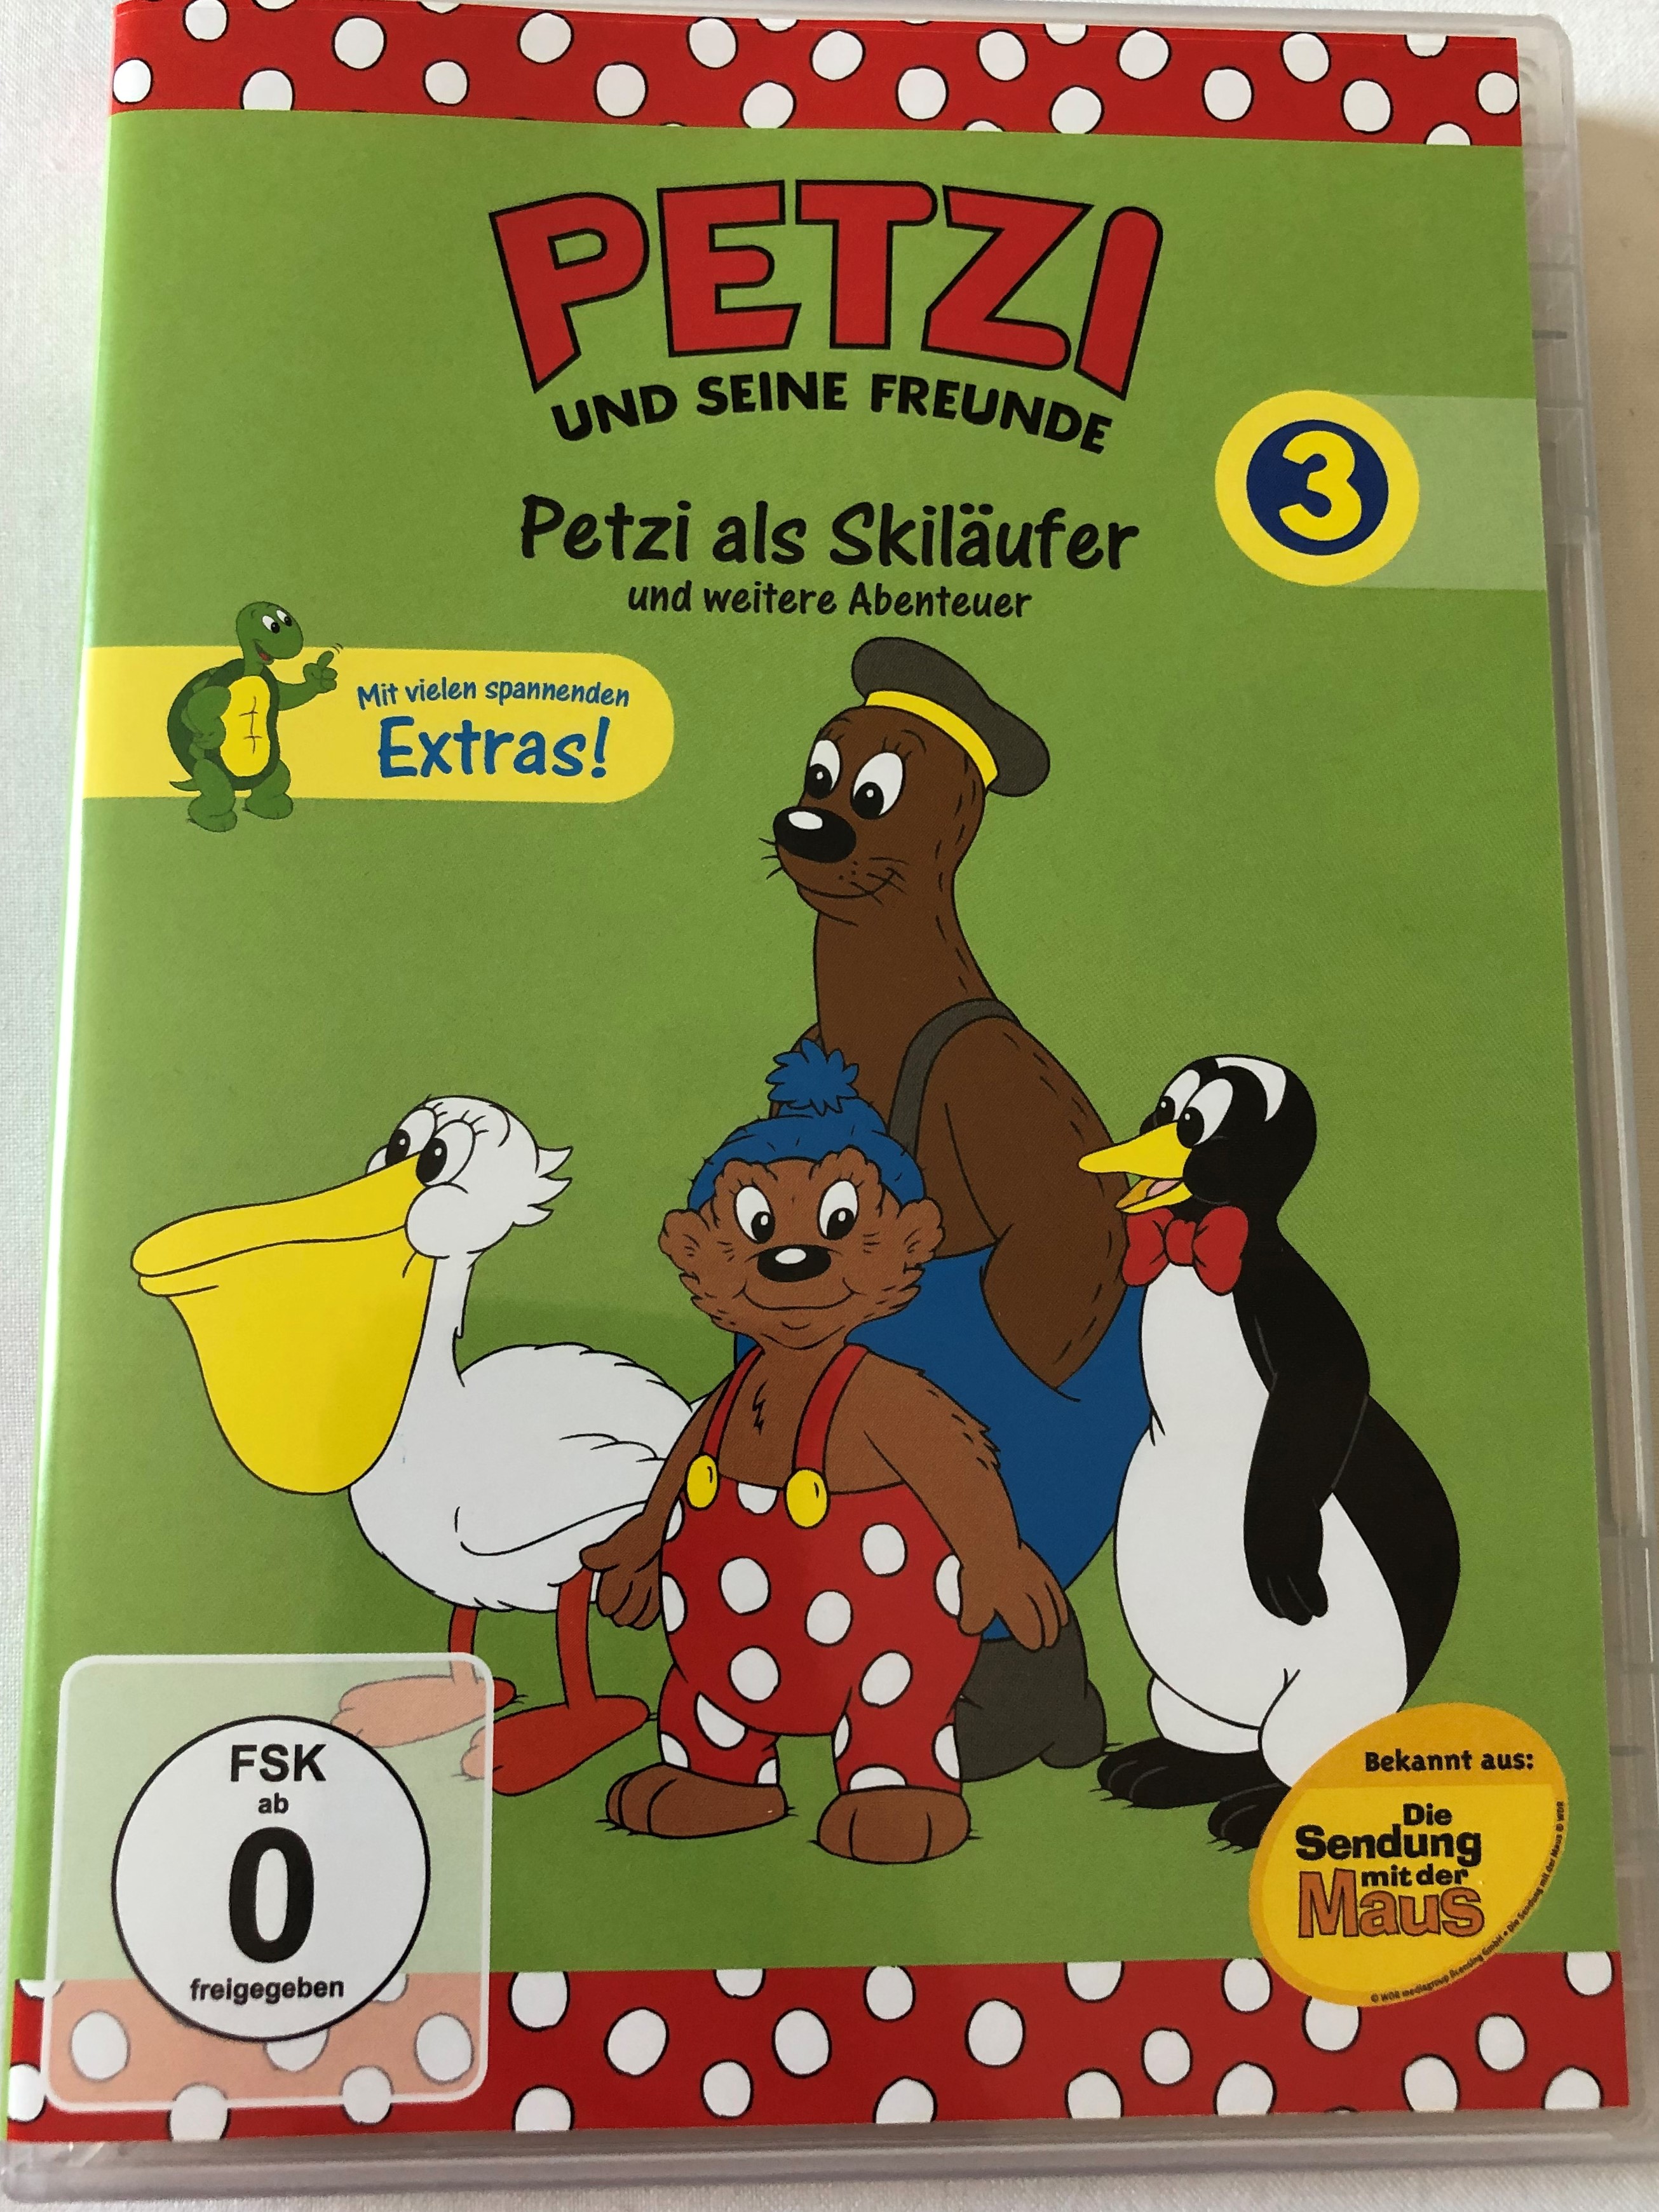 petzi-und-seine-freunde-3.-dvd-2004-petzi-and-his-friends-petzi-als-skil-ufer-und-weitere-abenteuer-9-episodes-on-disc-classic-german-cartoon-1-.jpg